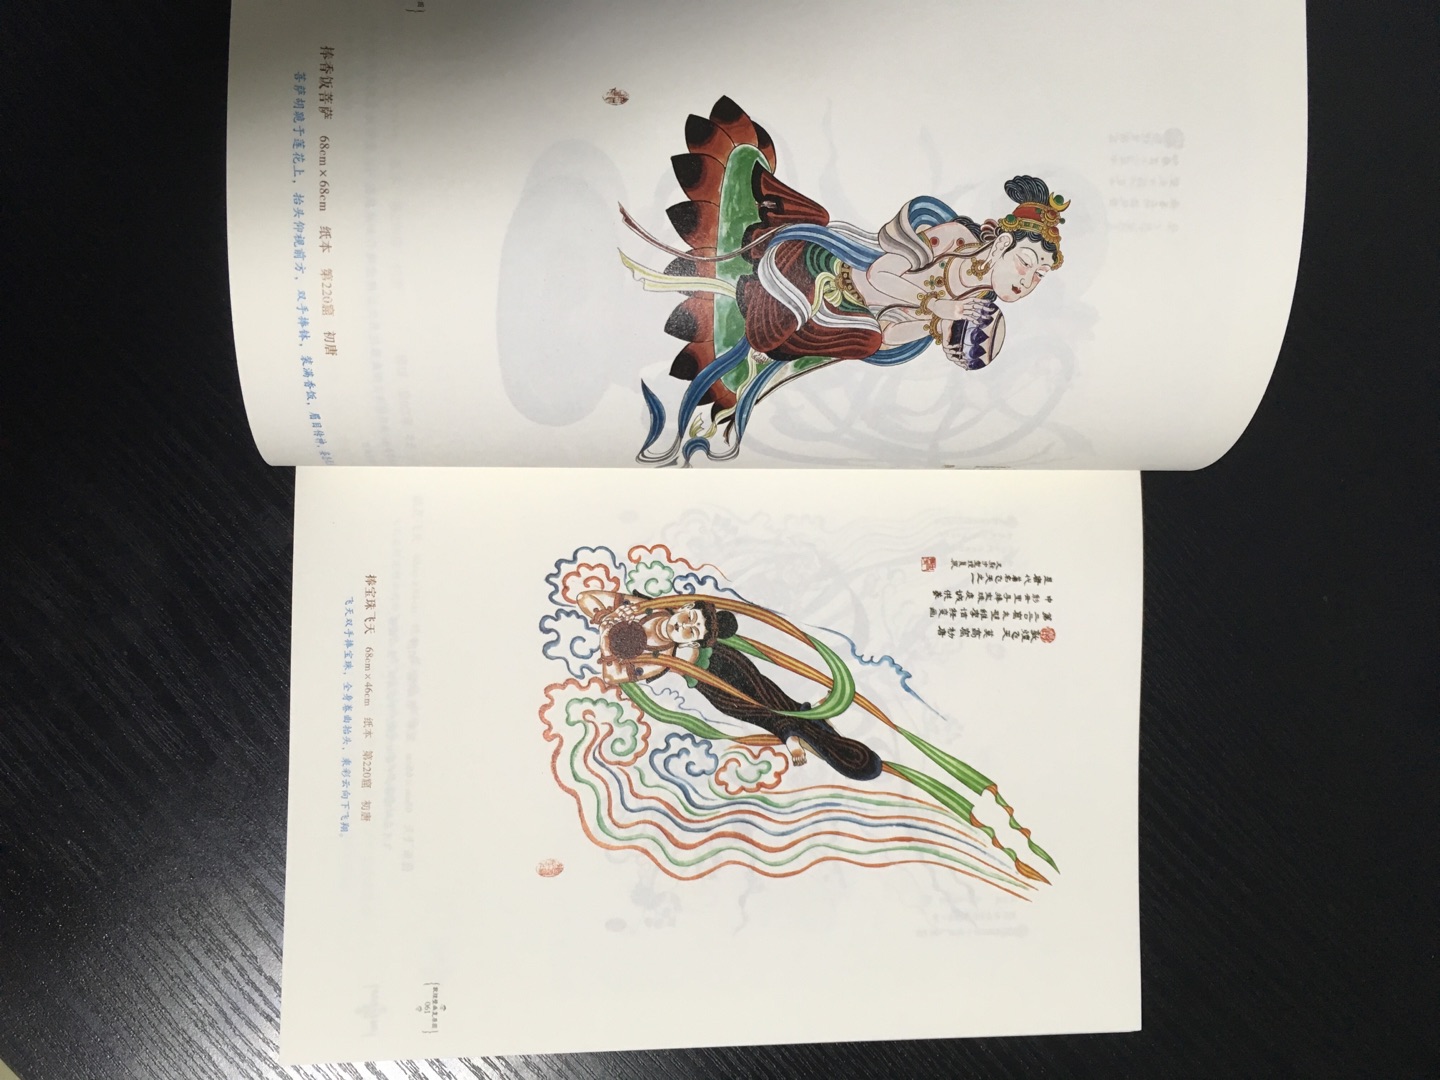 很精美的一本书，展示了中国绘画艺术的魅力。书籍质量值得点赞。